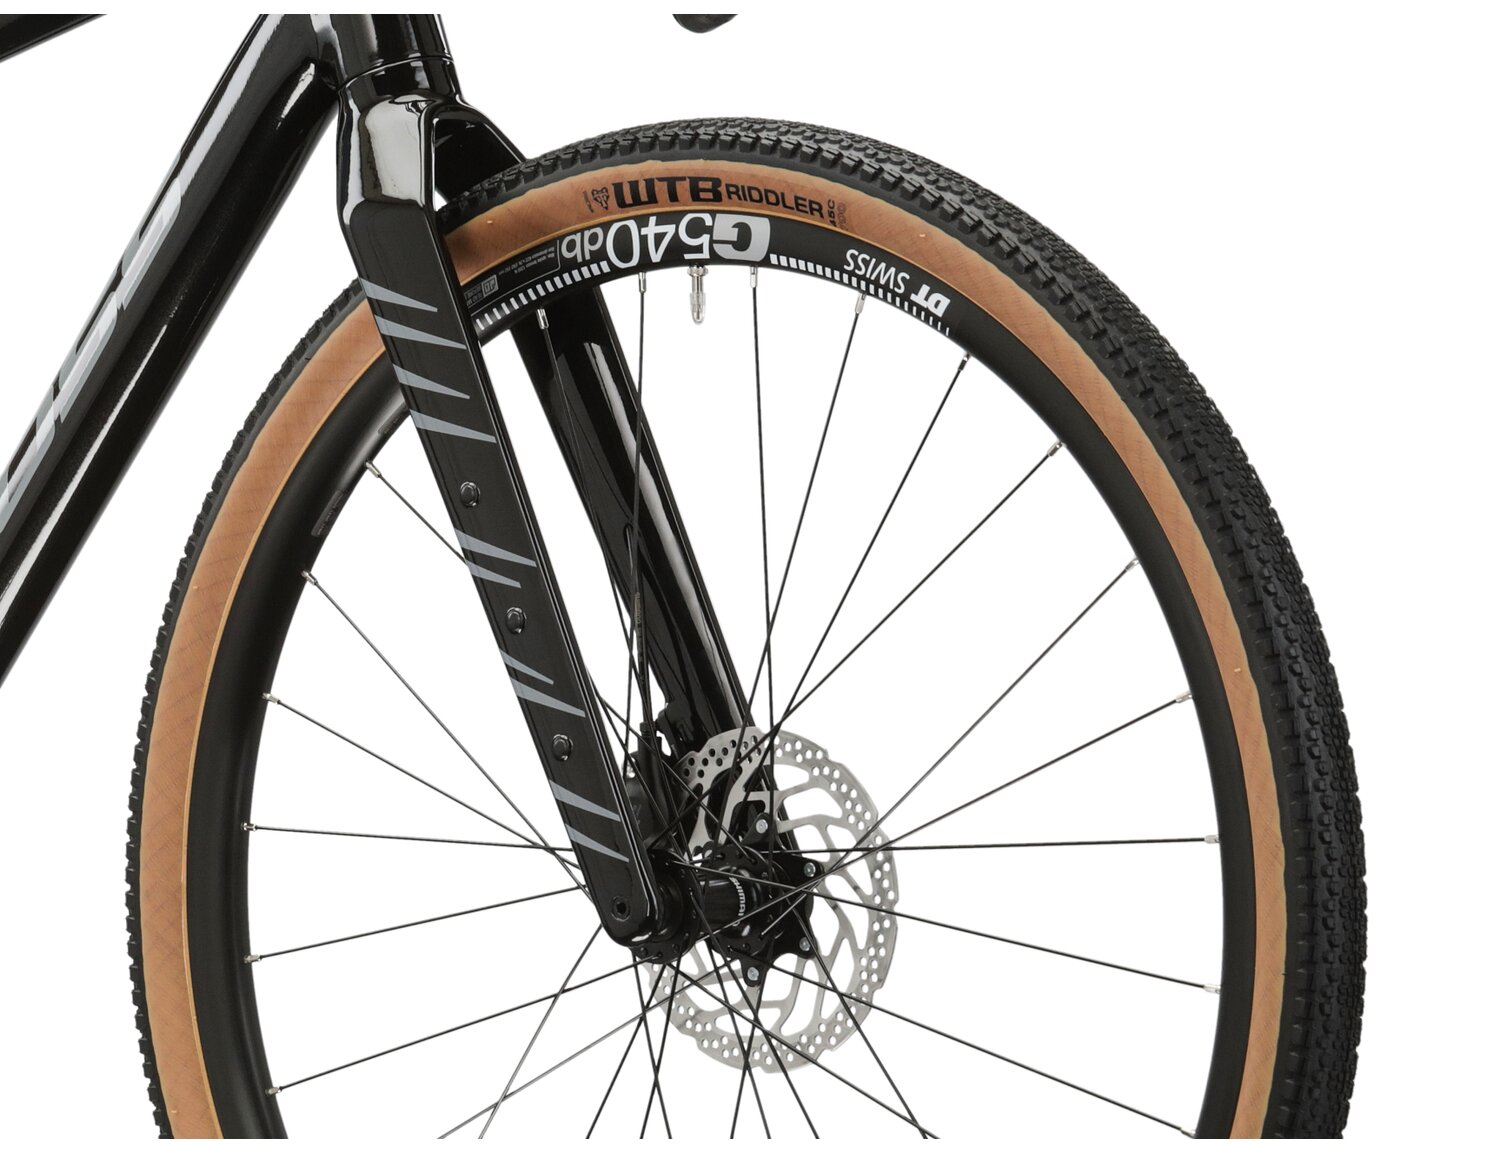  Sztywny carbonowy widelec oraz opony WTB Riddler o szerokośći 45mm w rowerze gravelowym KROSS Esker 6.0 